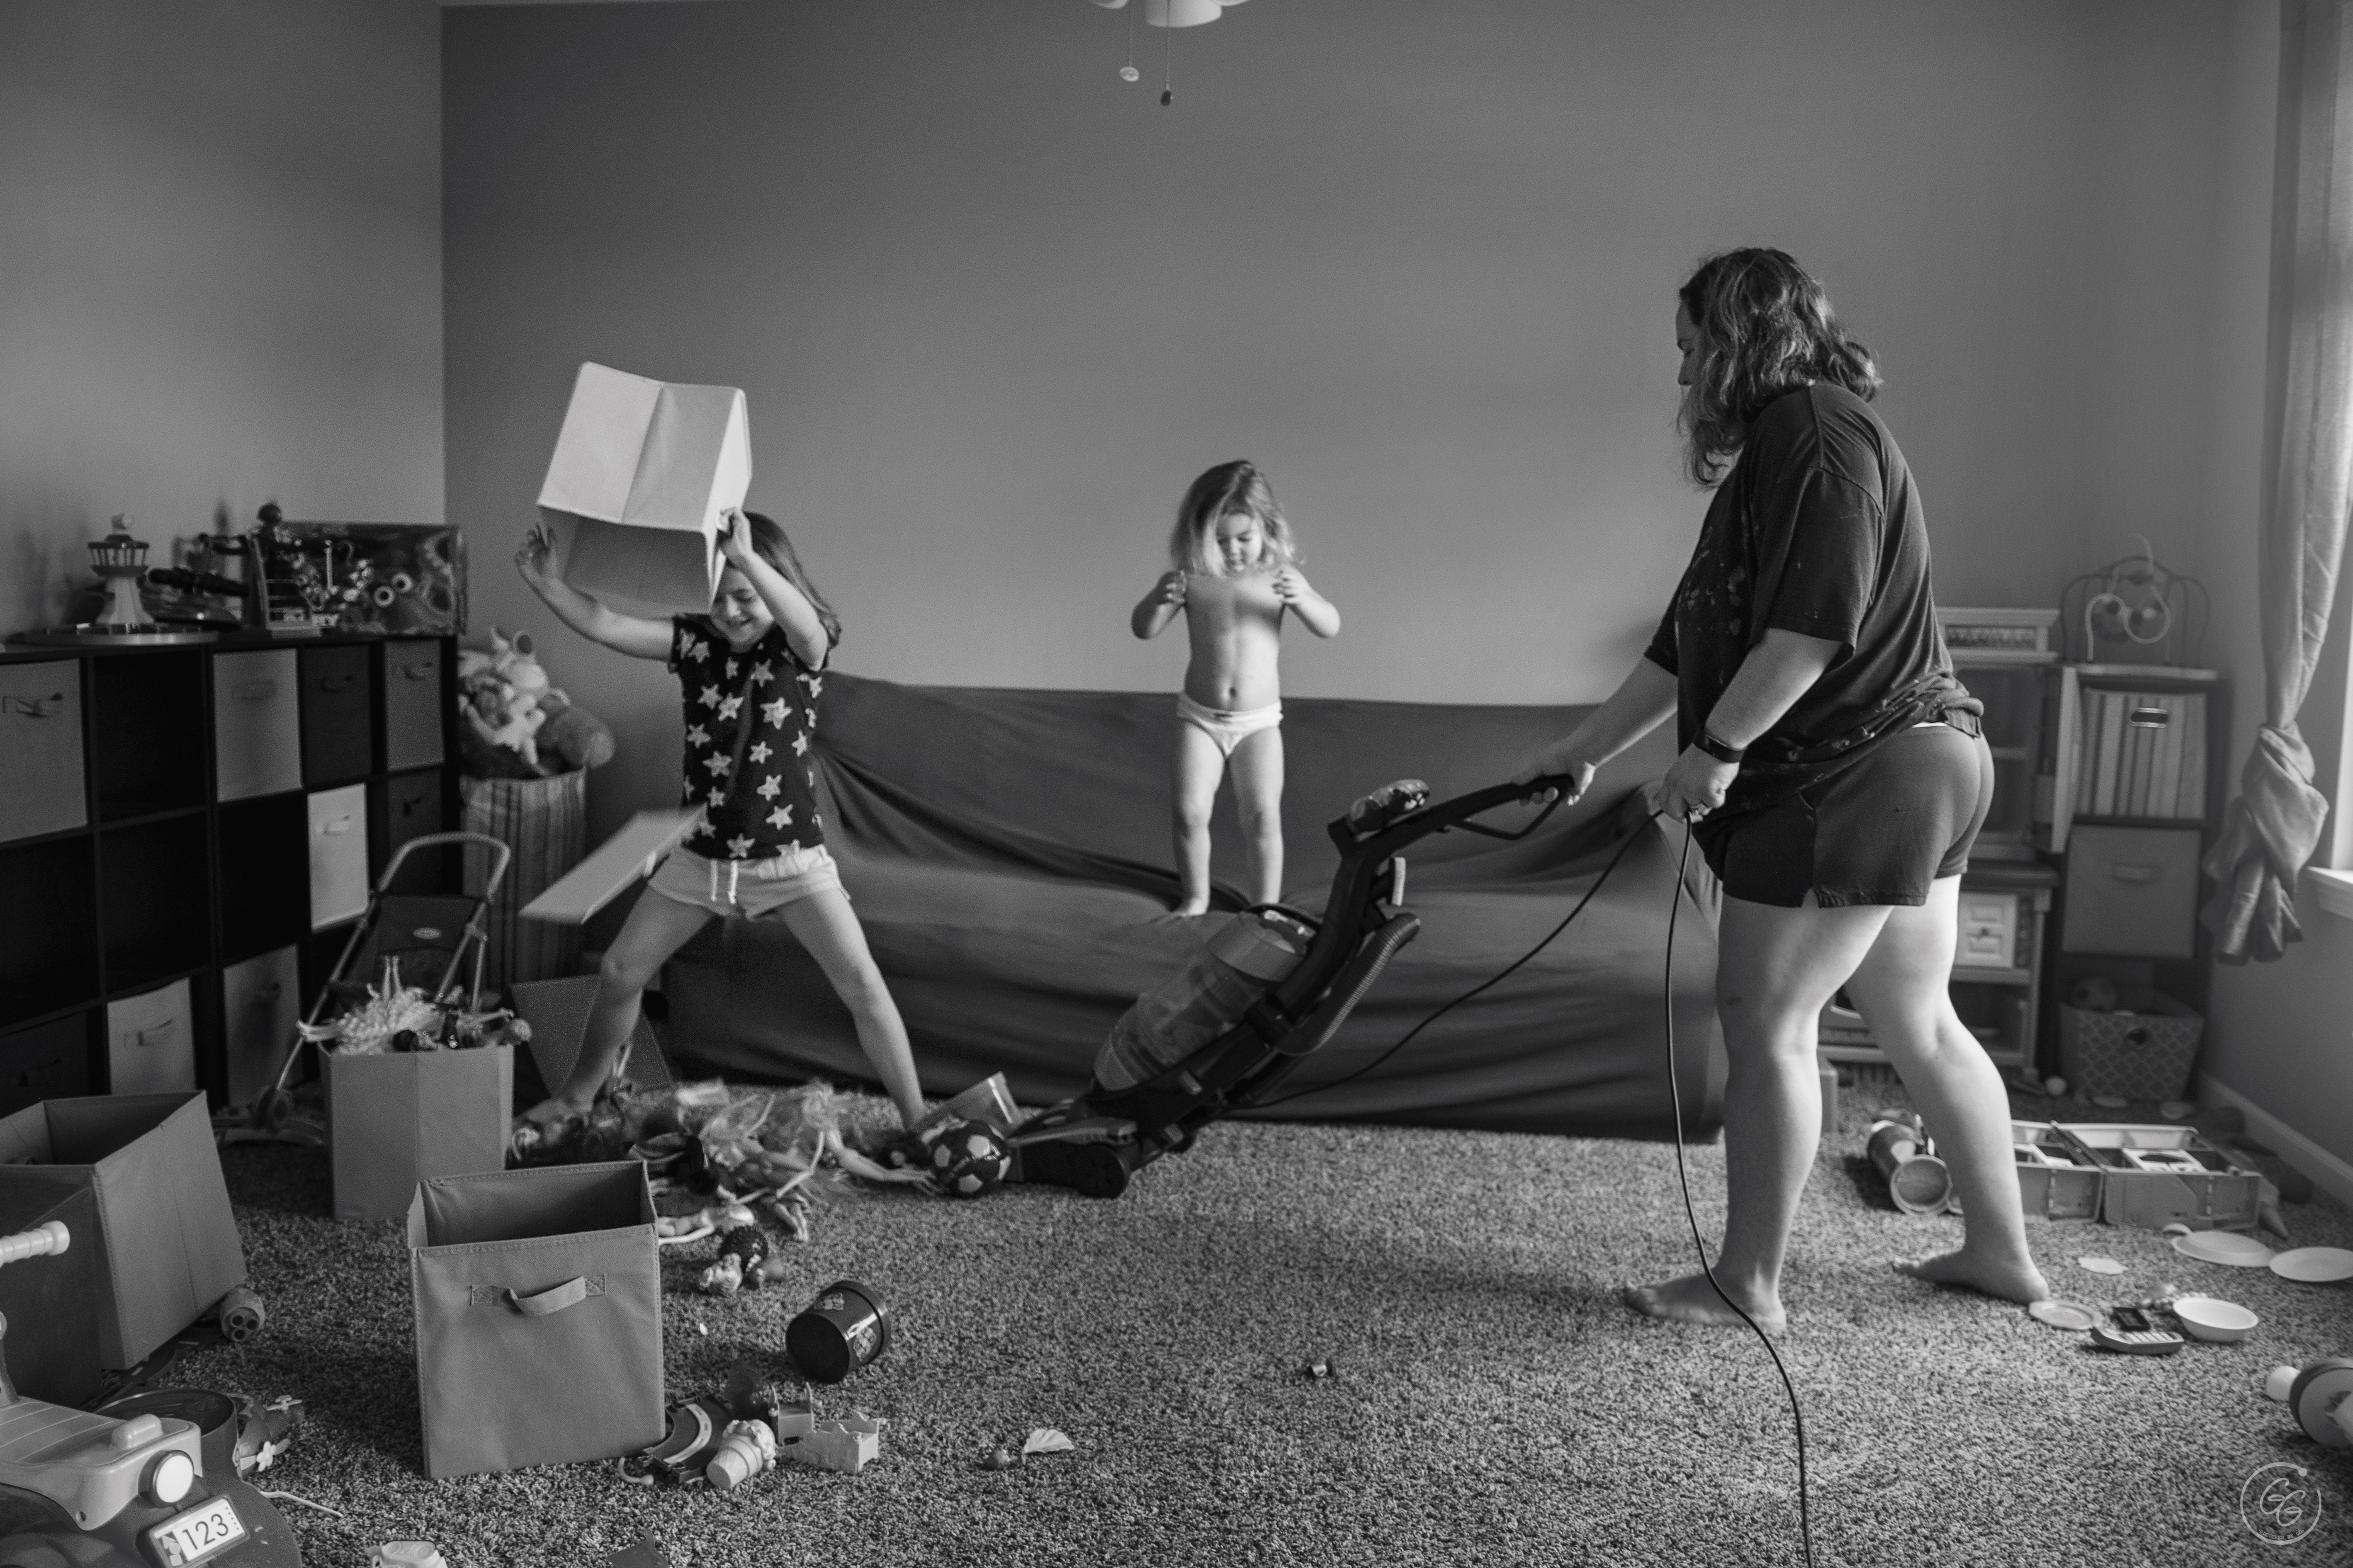 Deze fotograaf toont moederschap in fotoserie